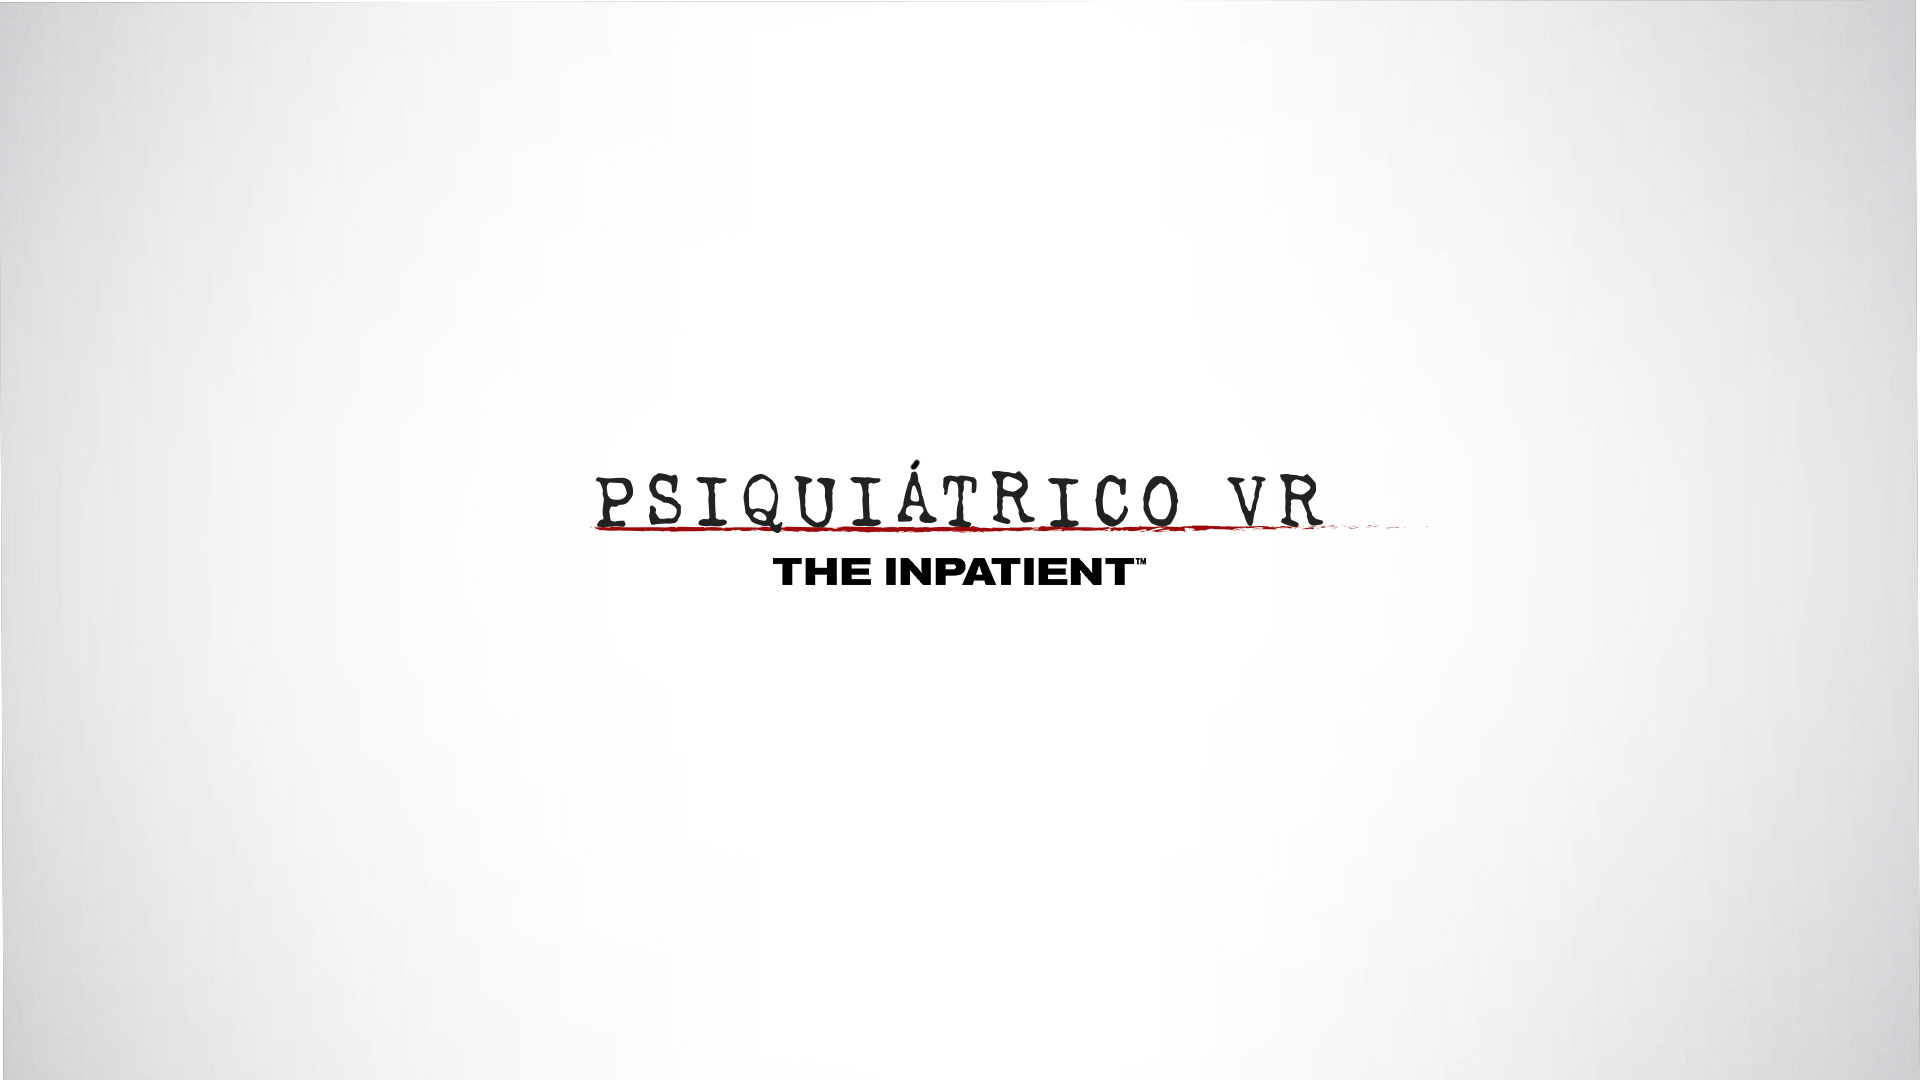 El PSIQUIÁTRICO VR abre sus puertas al público con el mejor terror virtual